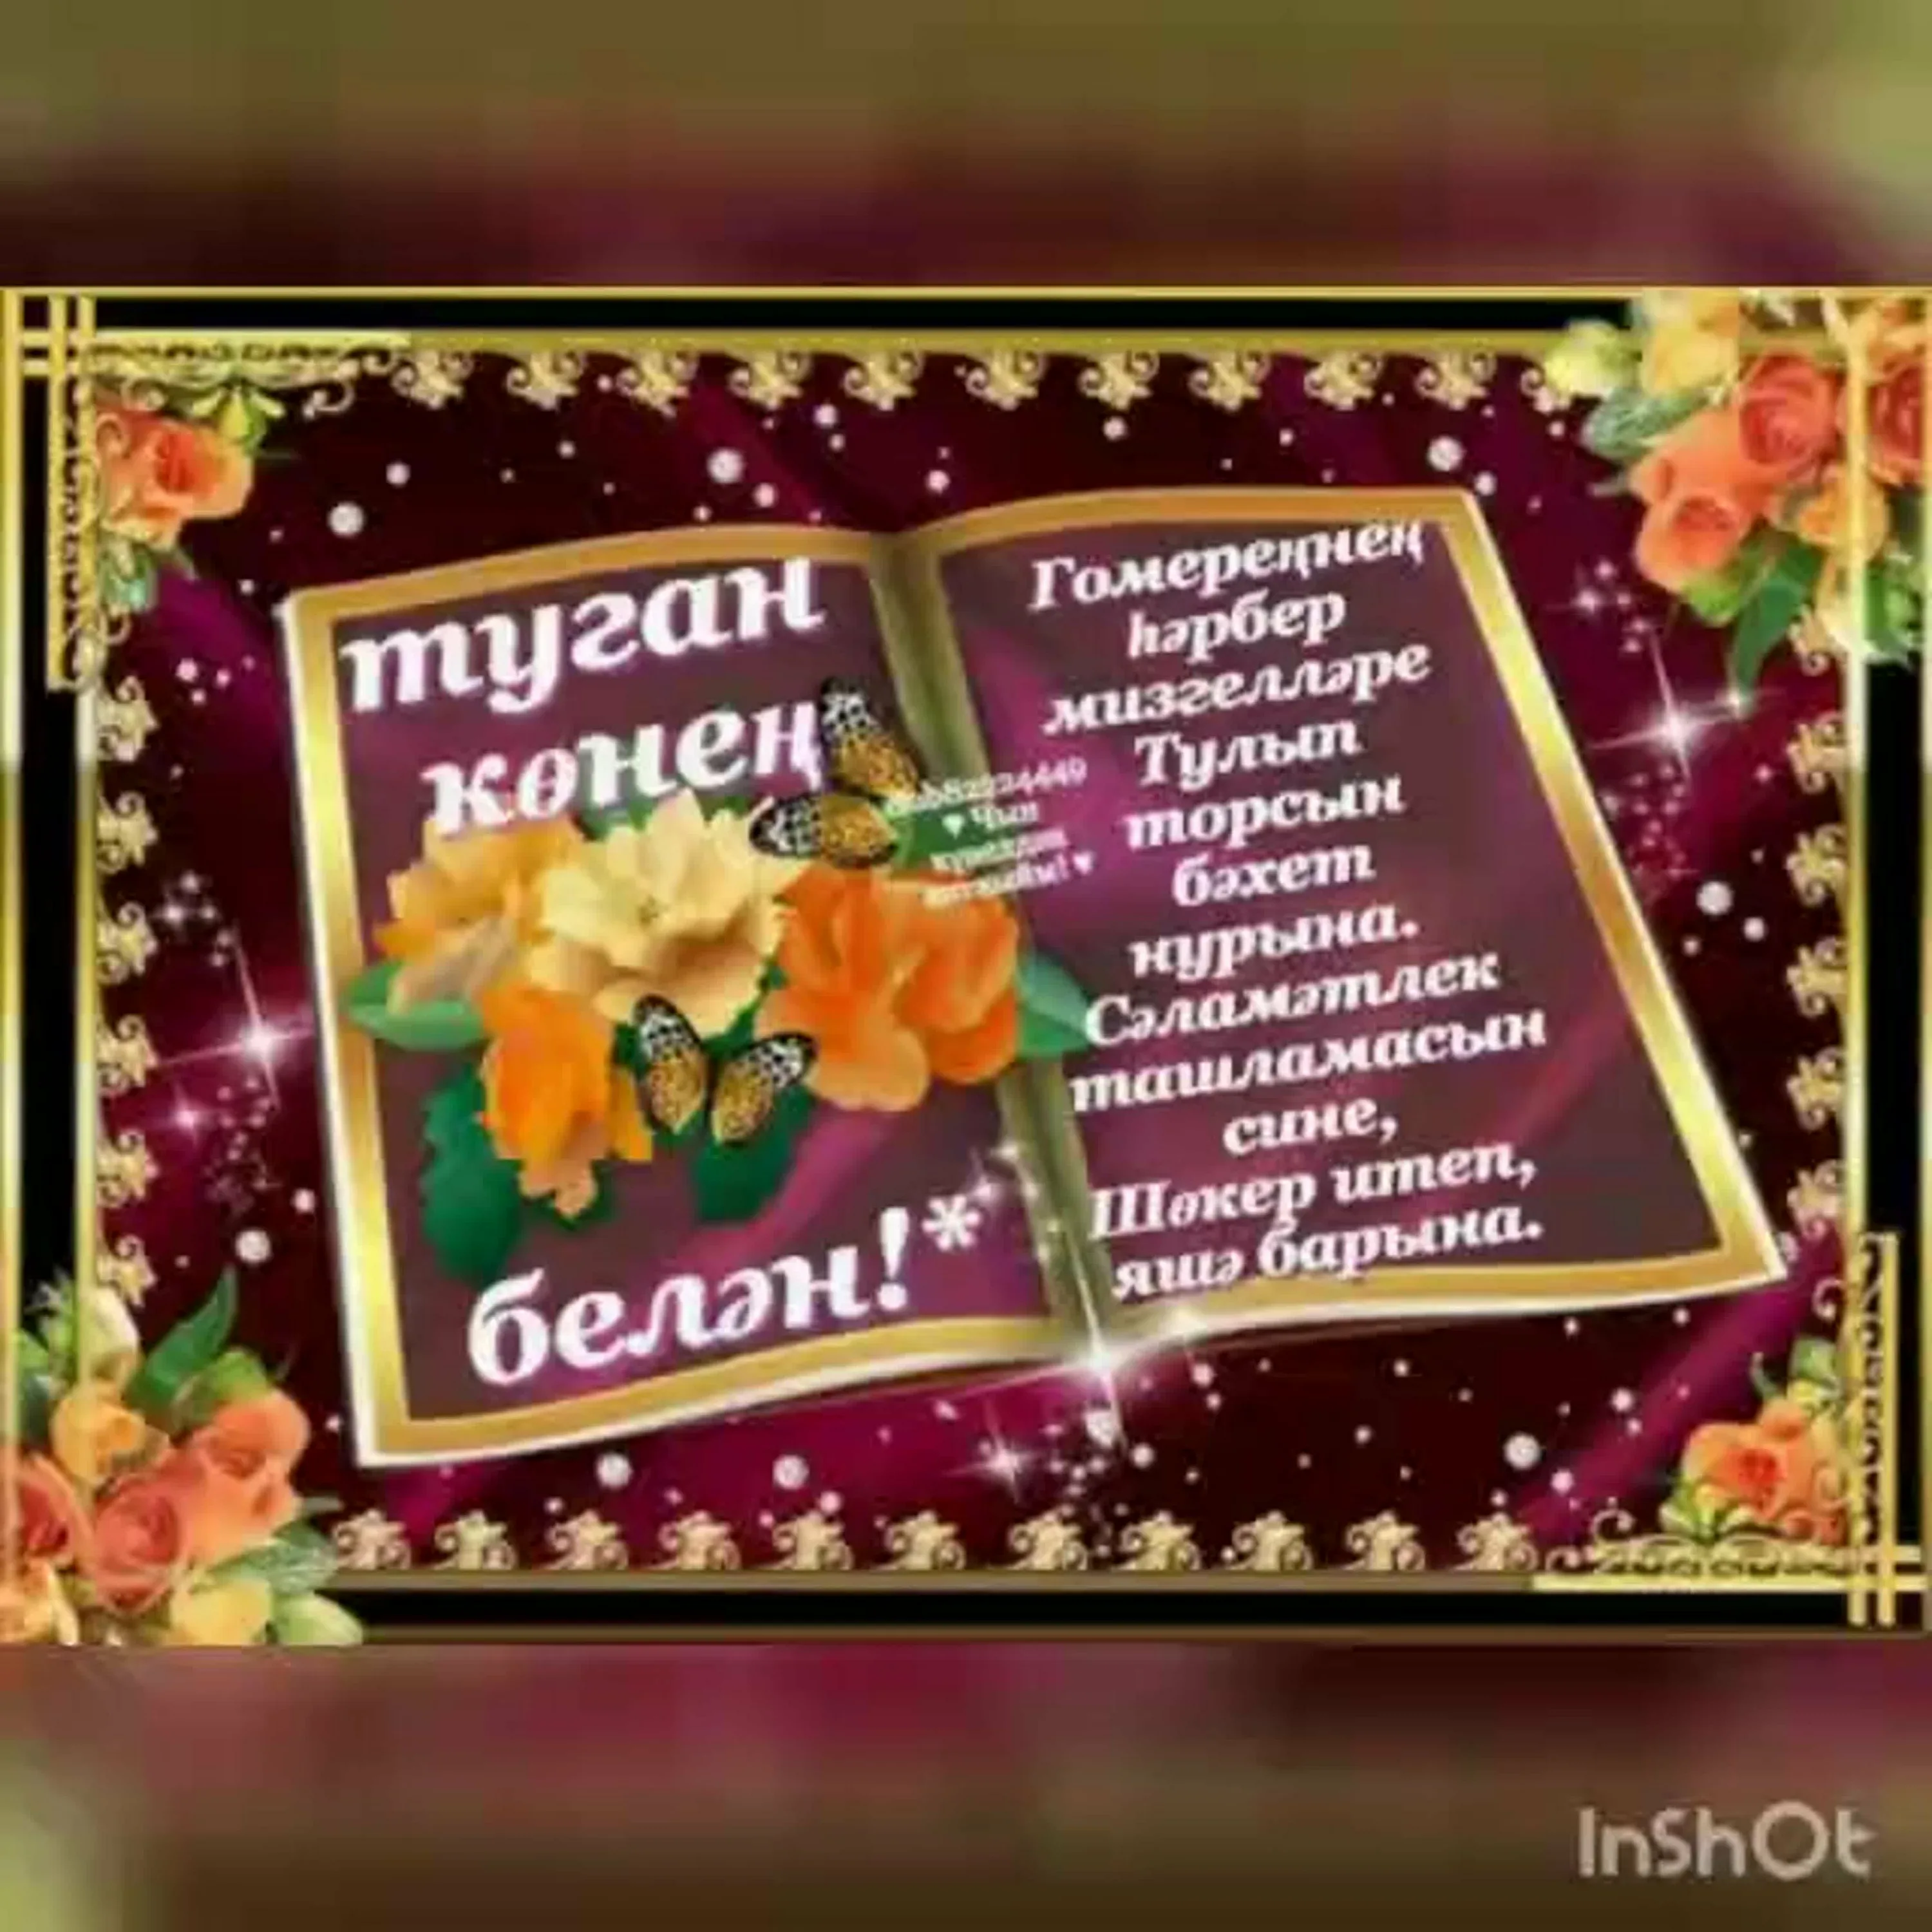 Фото Поздравления с Новым годом на татарском с переводом на русский язык #12